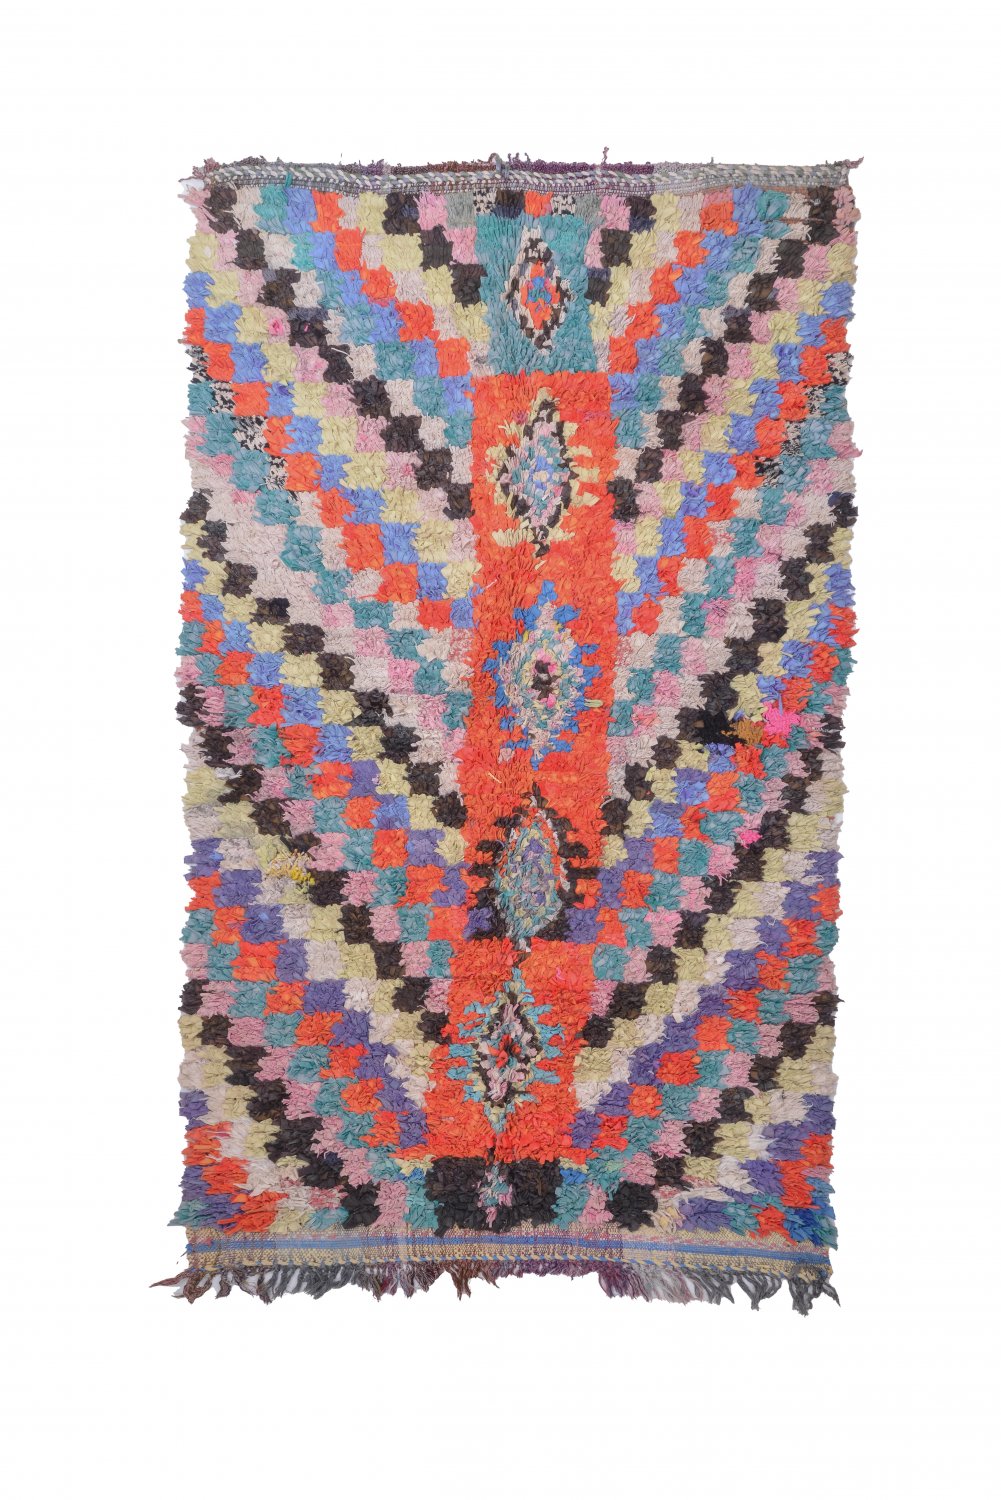 Moroccan Berber rug Boucherouite 250 x 150 cm